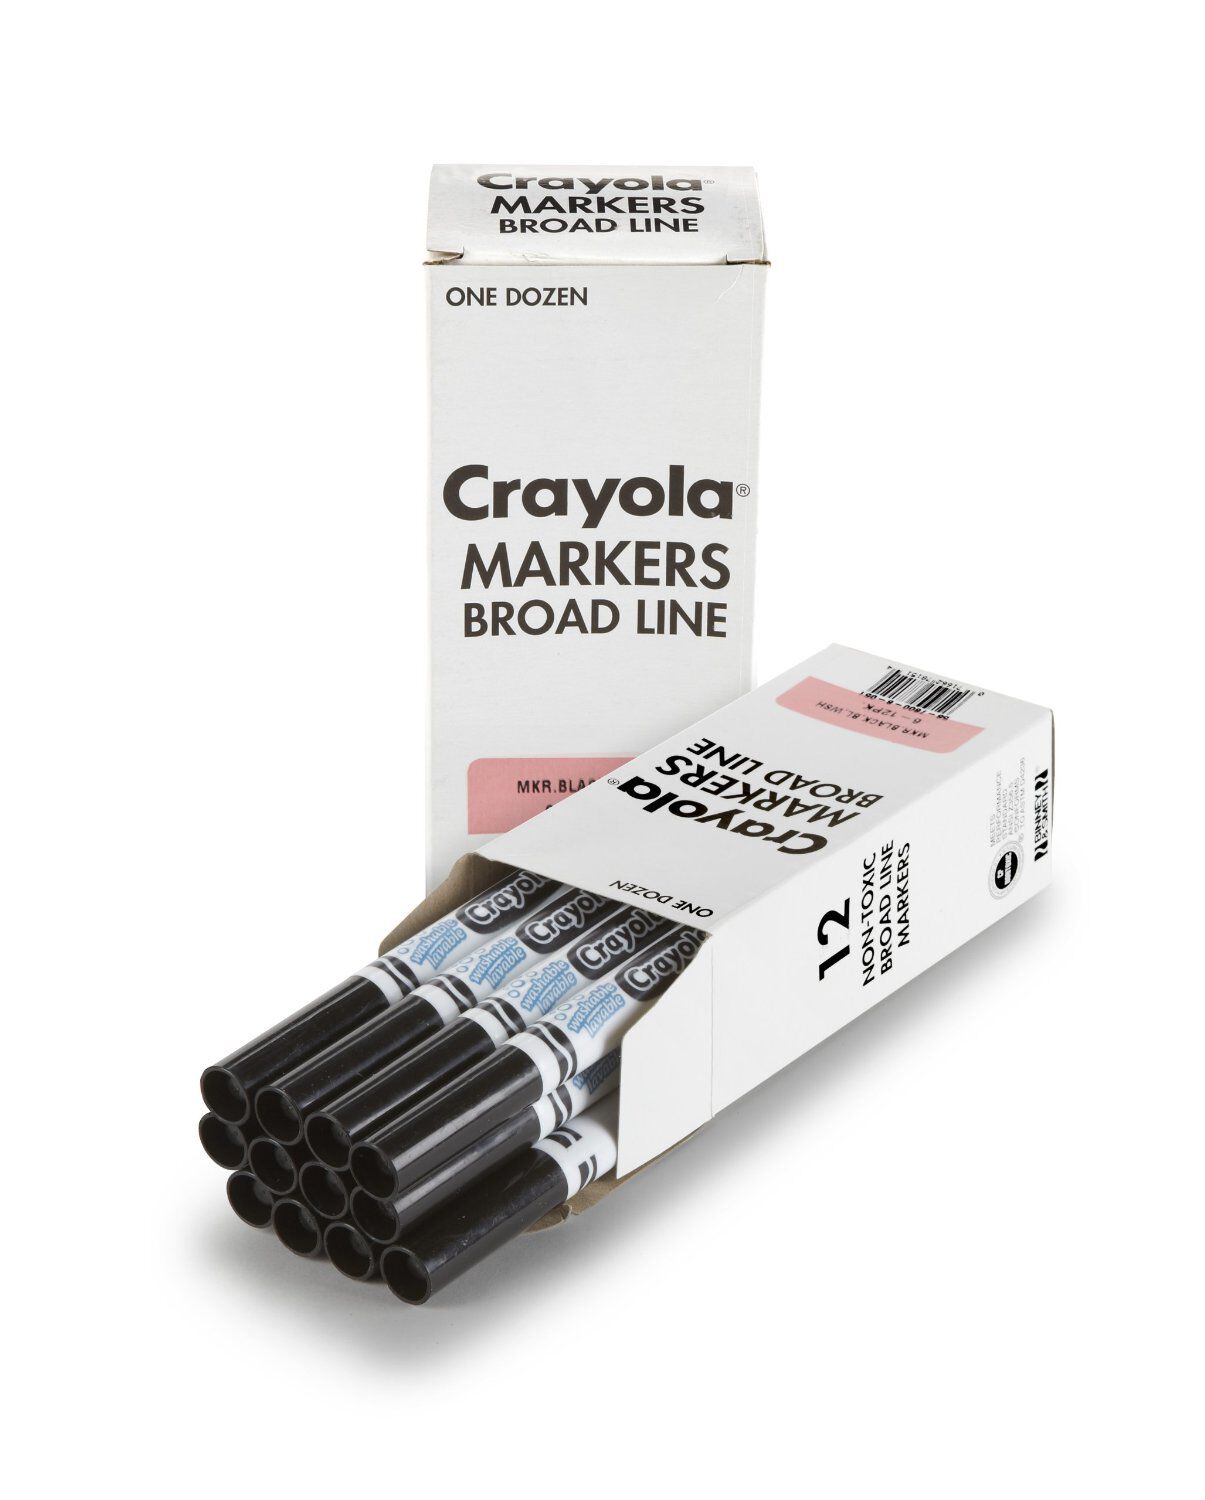 Crayola Black Markers in Bulk, 12 Count, Crayola.com